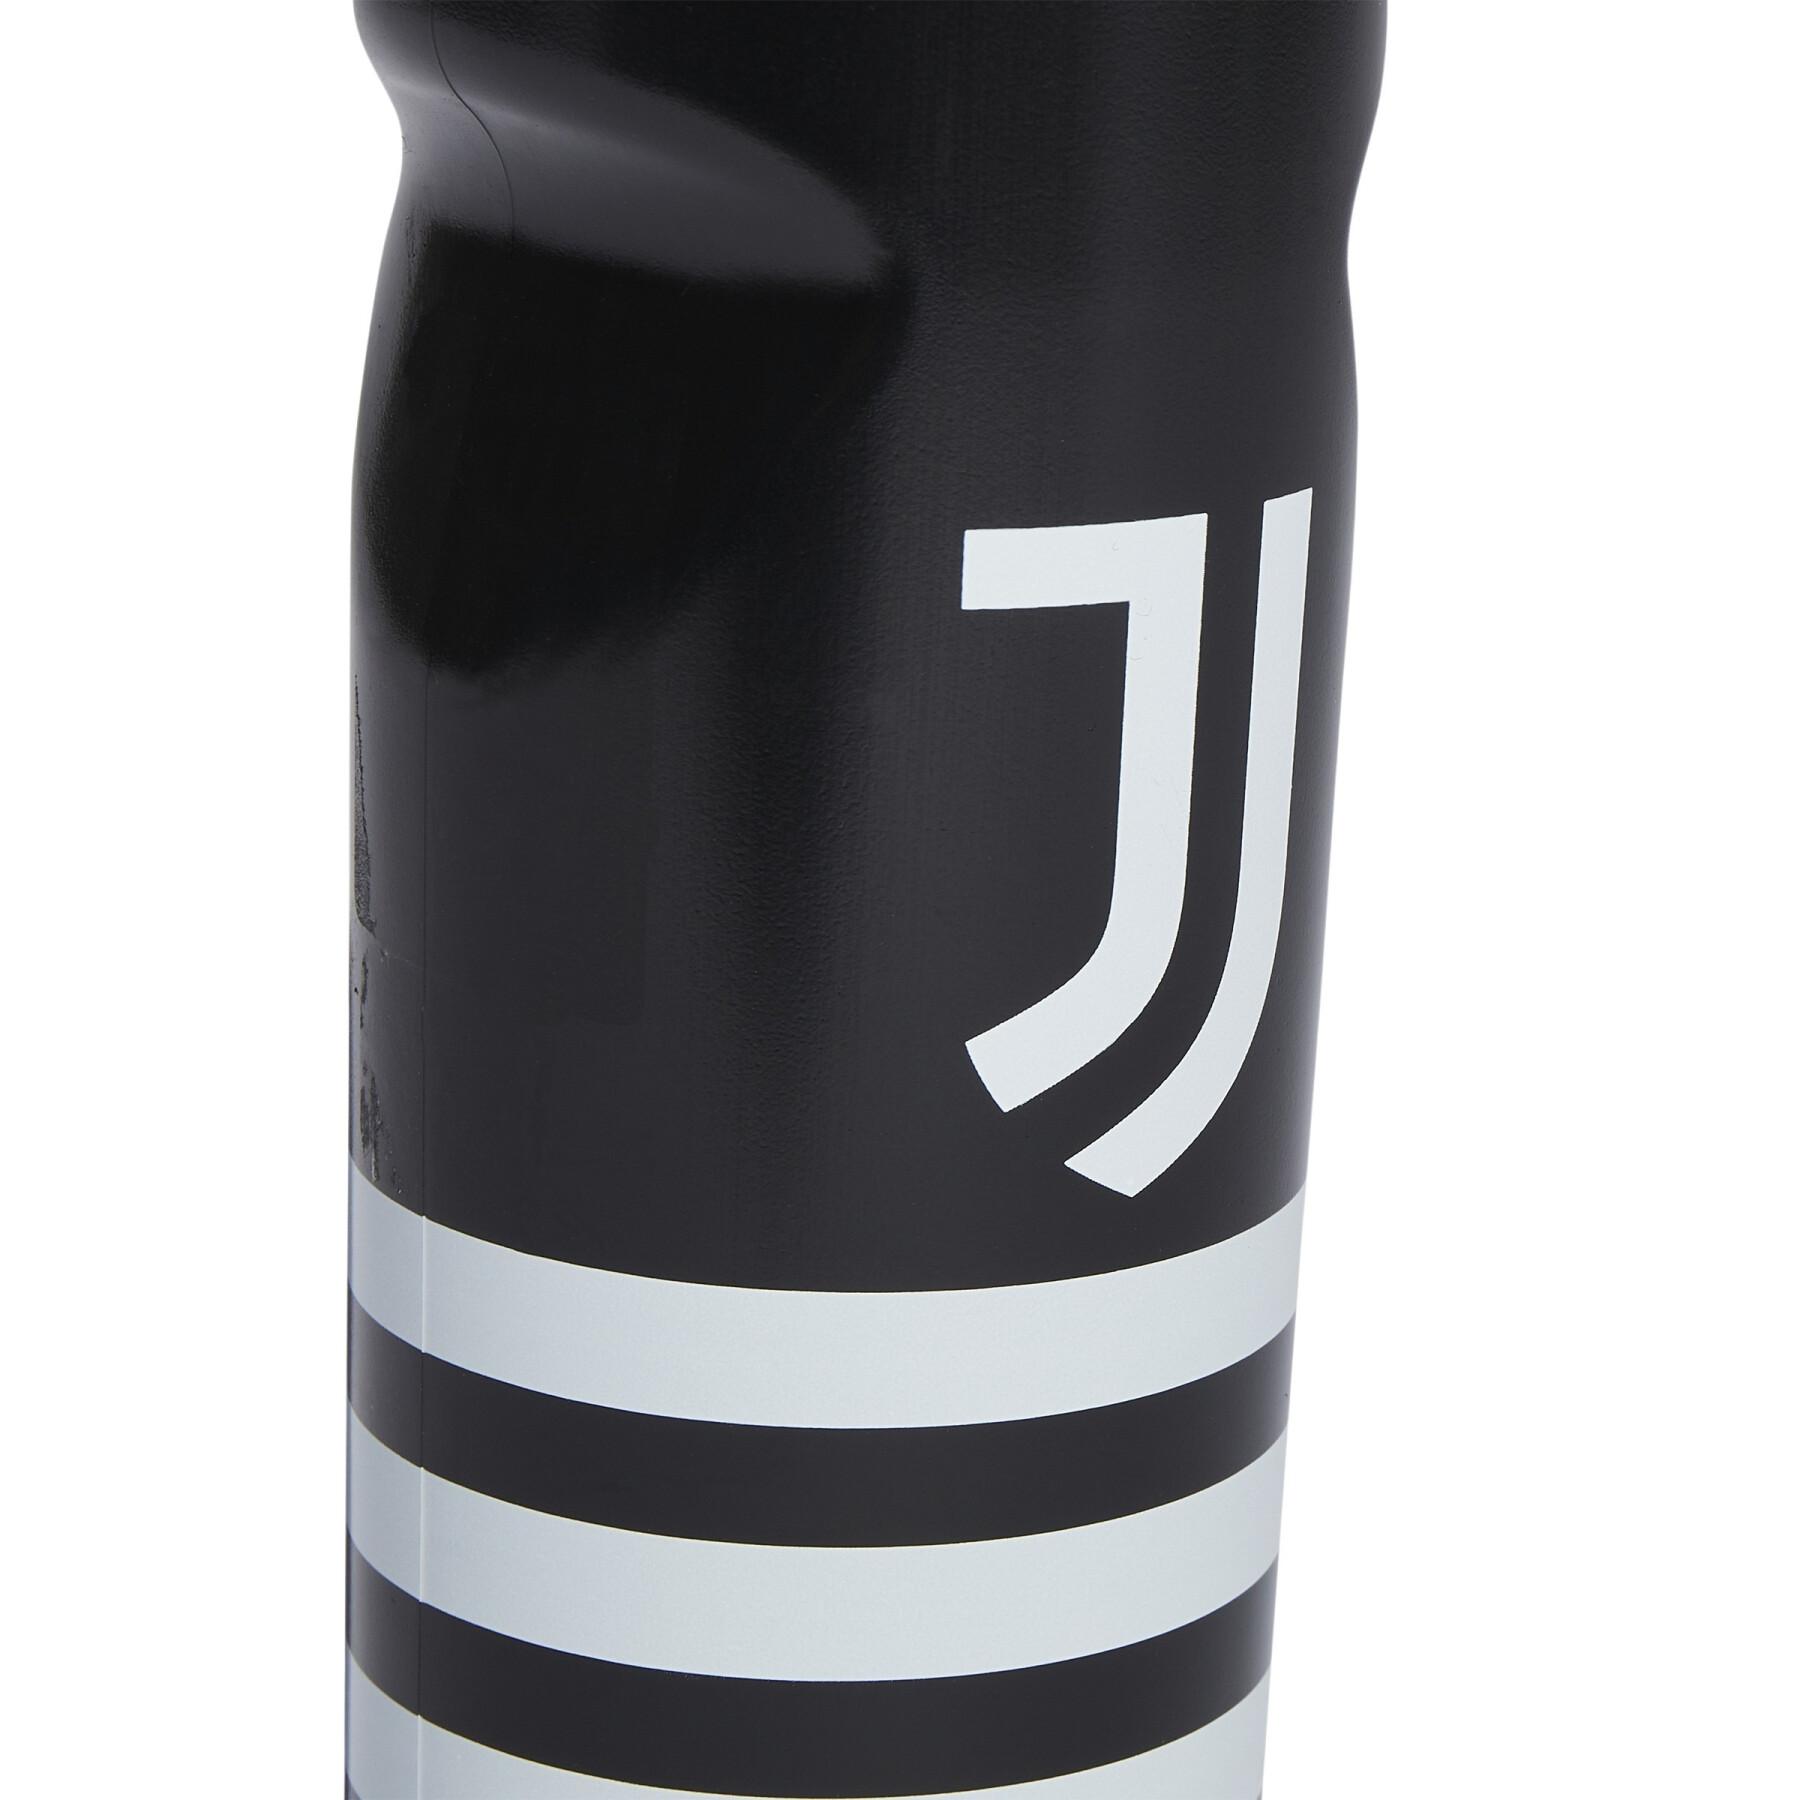 Flaska Juventus 750 mL 2022/23